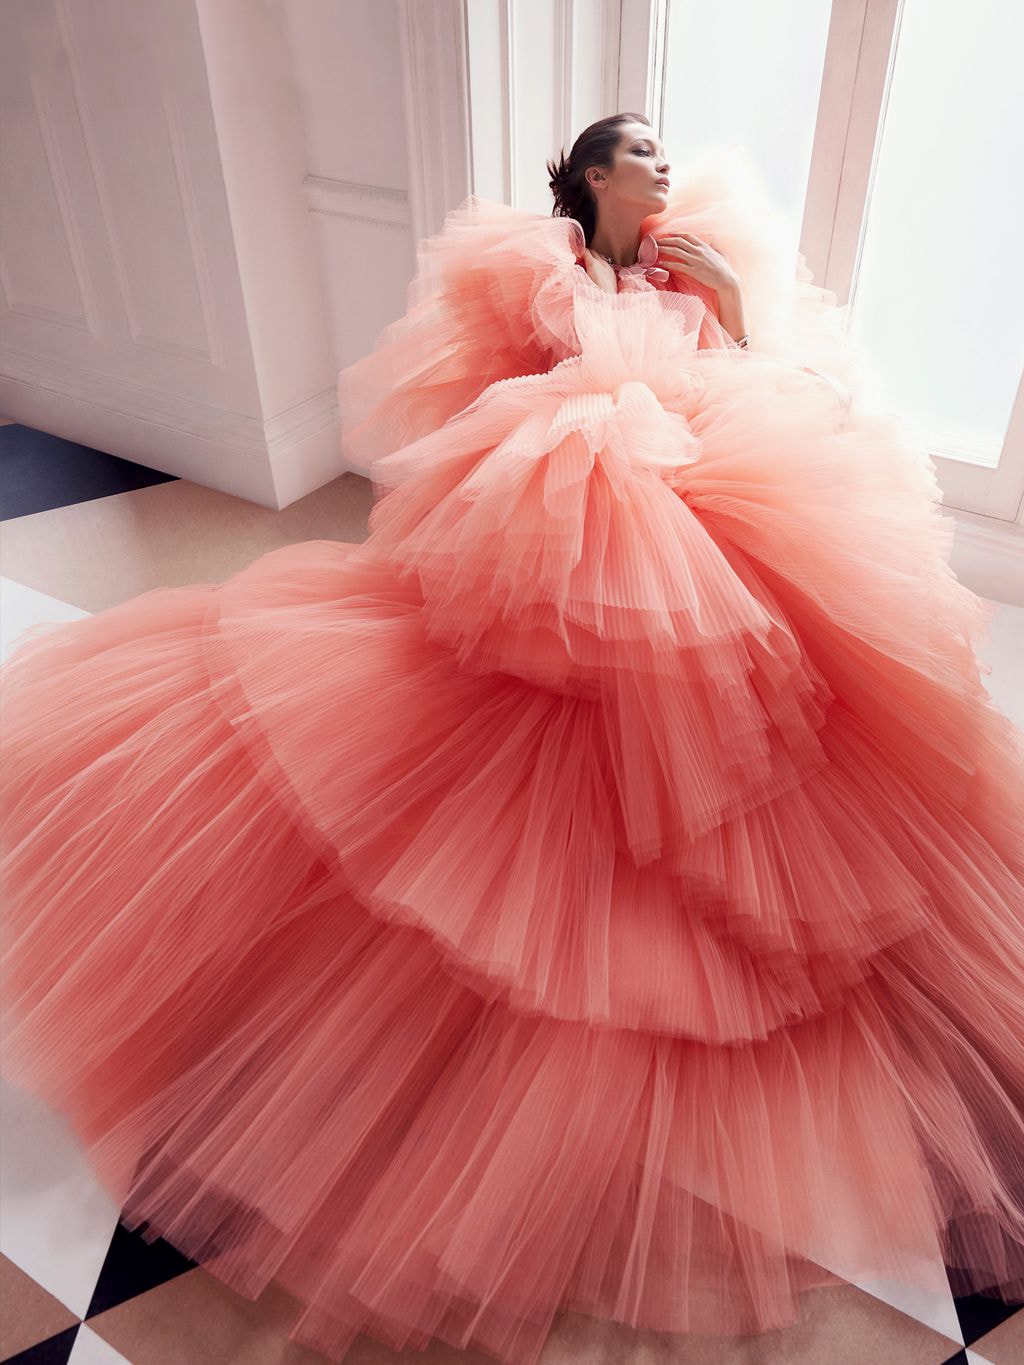 Bella Hadid Harper's Bazaar June July 2018 Pink Tulle Dress Gown